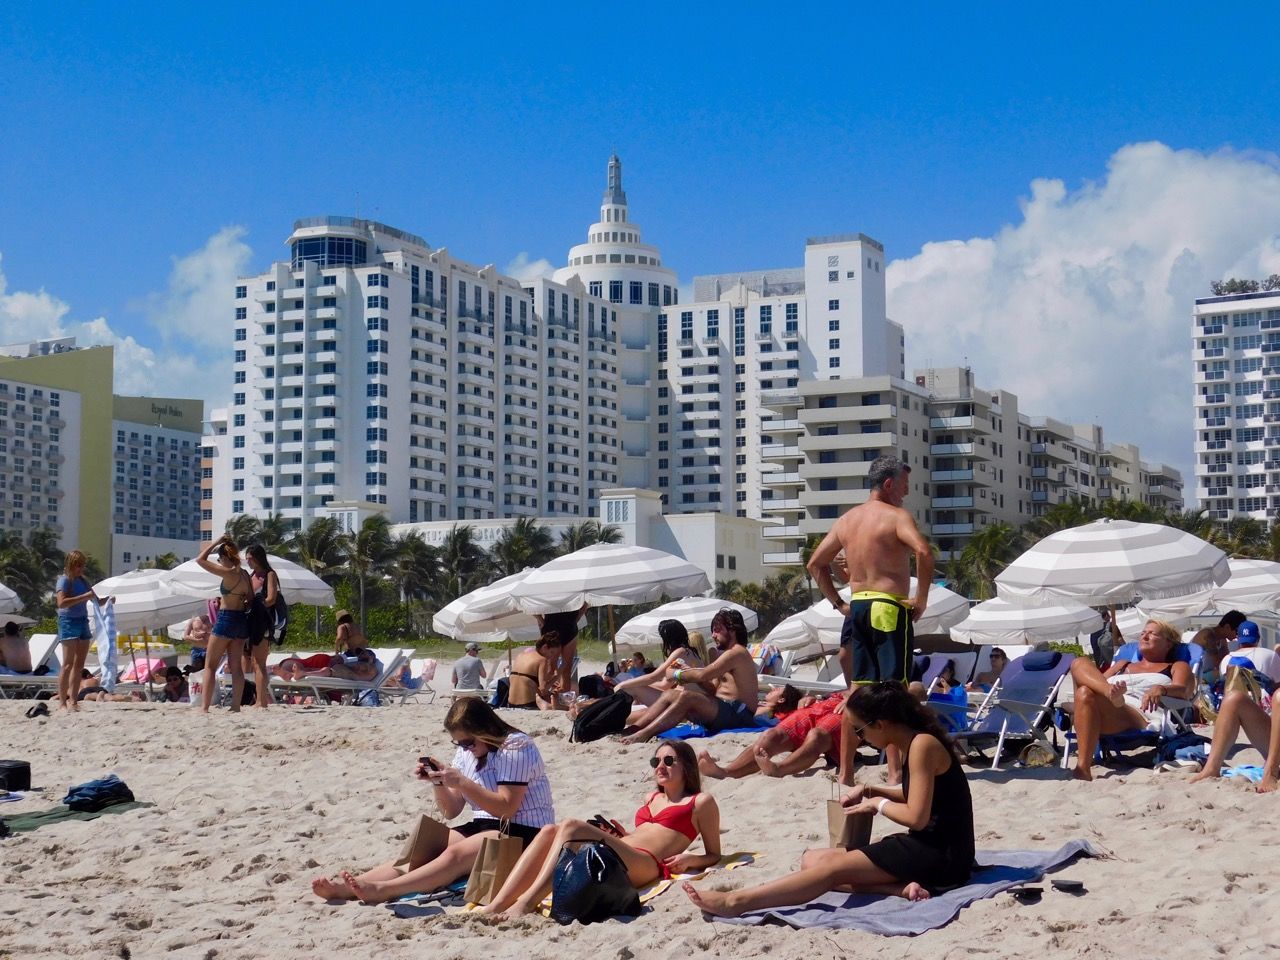 Loews Hotel, hôtel art déco sur Ocean Drive à South Beach / Miami Beach